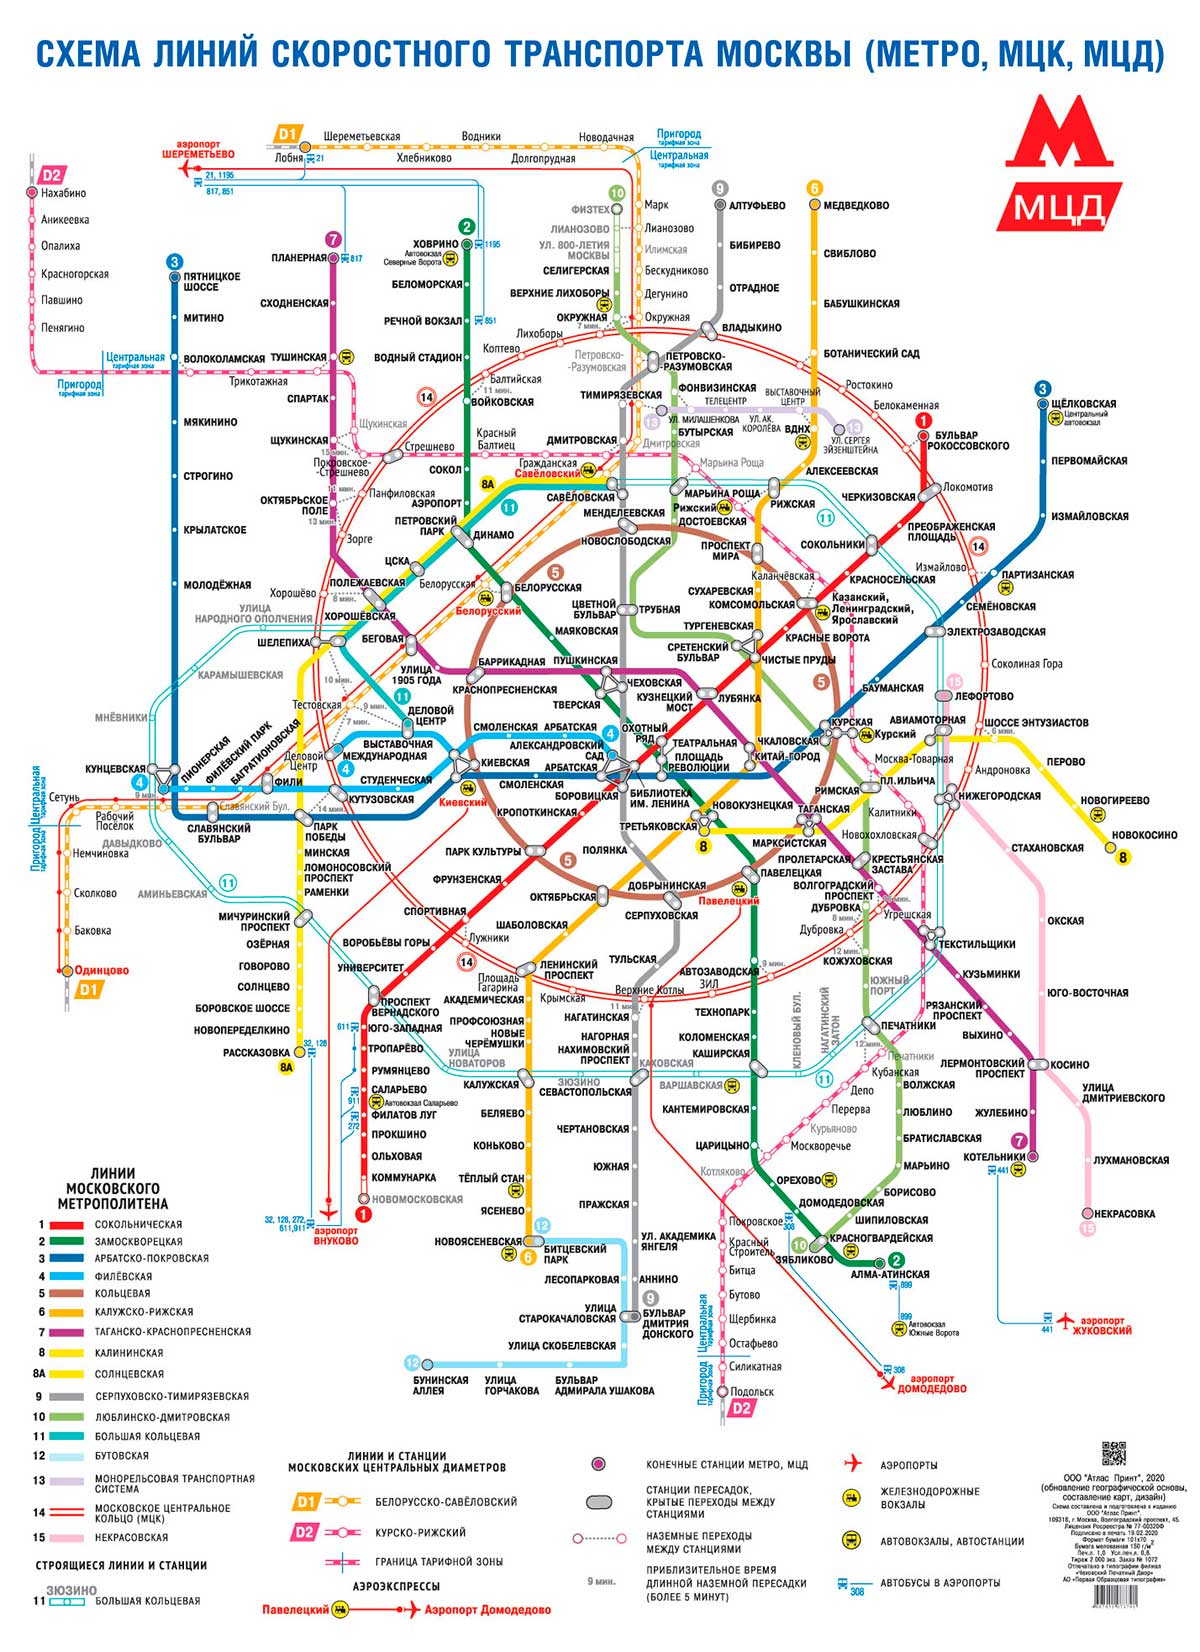 Метрополитен карта 2023 года